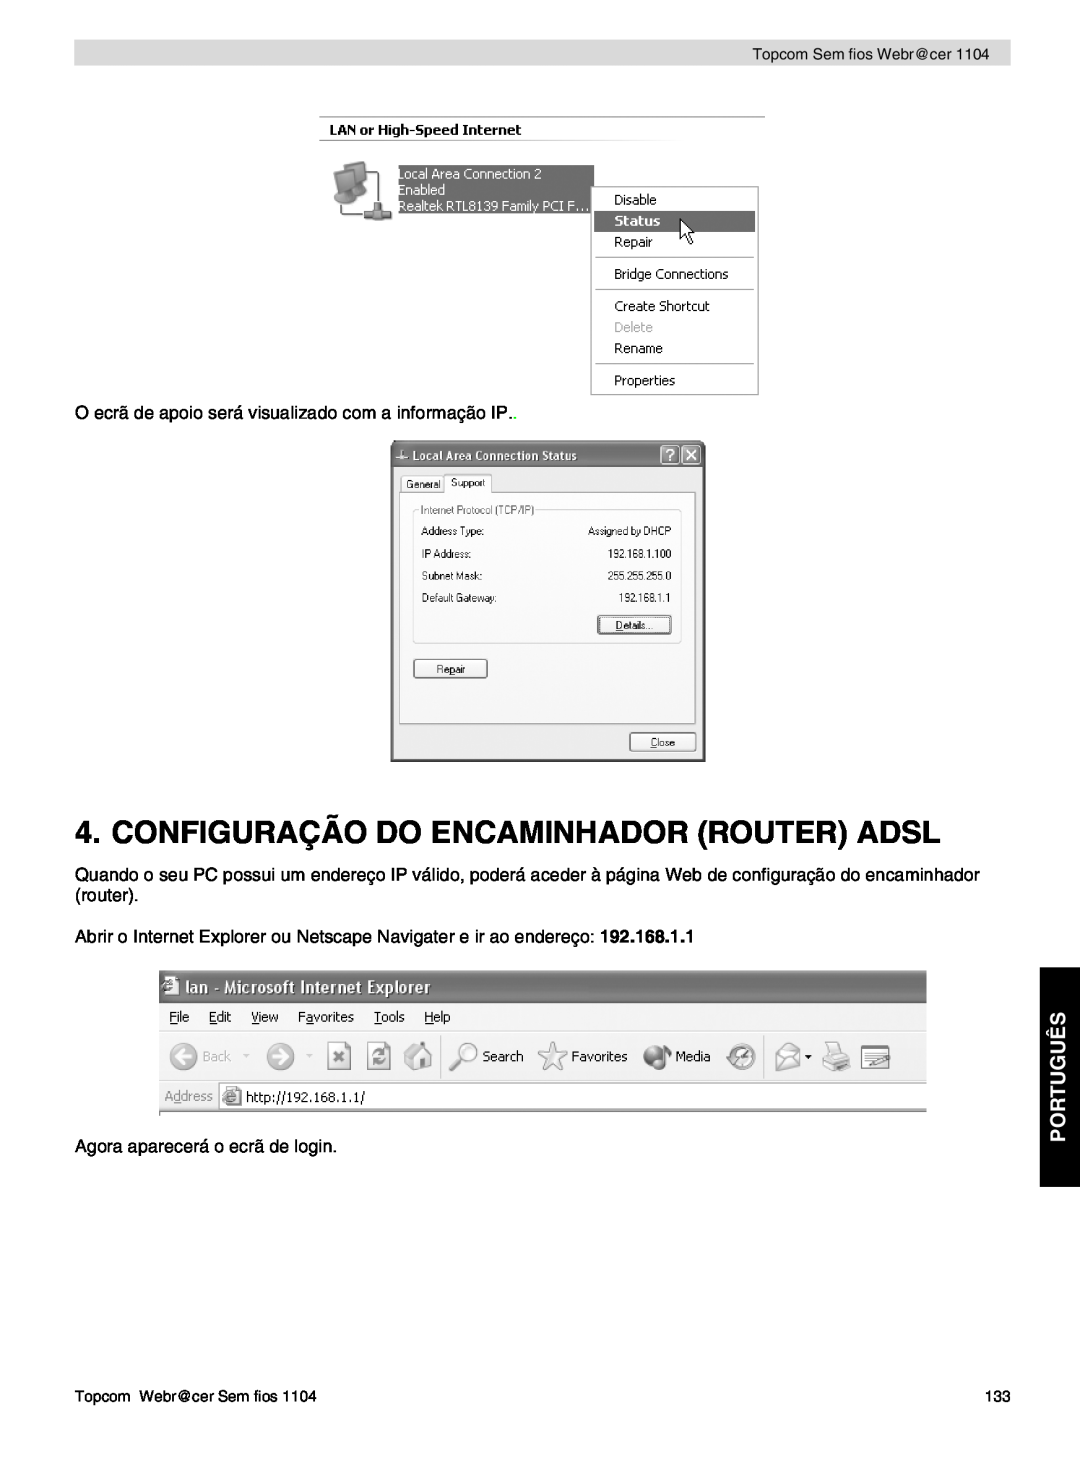 Topcom 1104 Configuração Do Encaminhador Router Adsl, Português, O ecrã de apoio será visualizado com a informação IP 